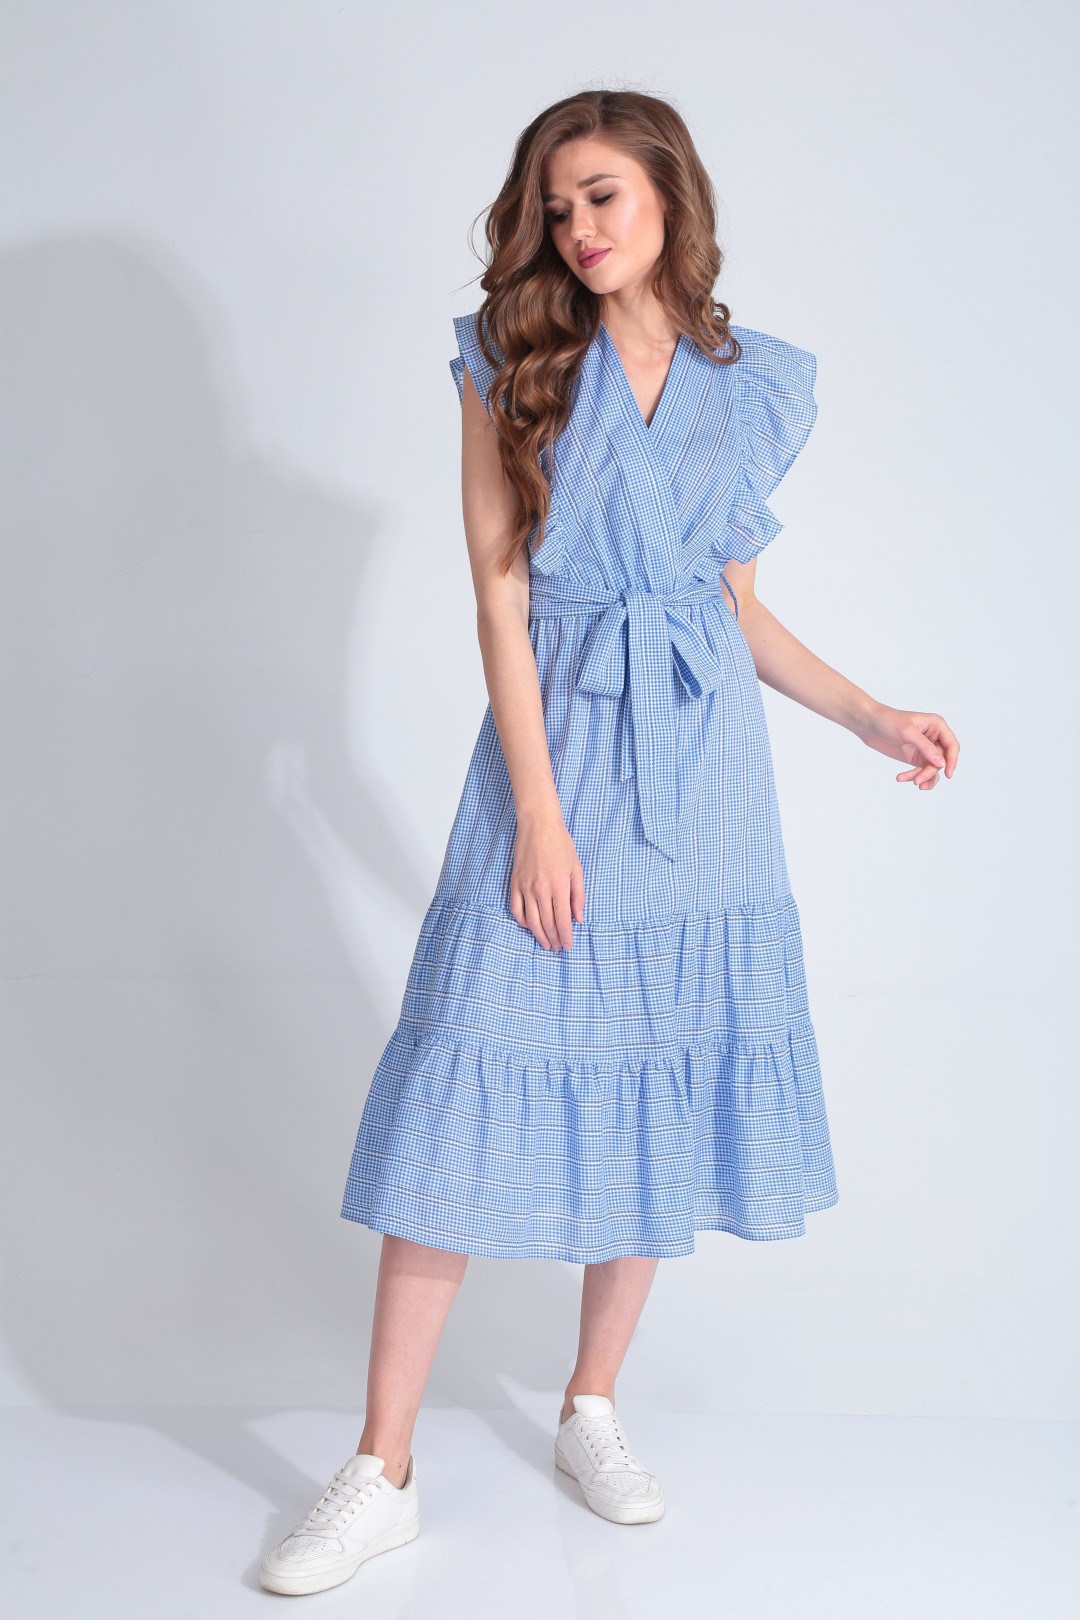 Платье Карина Делюкс В-279 голубой